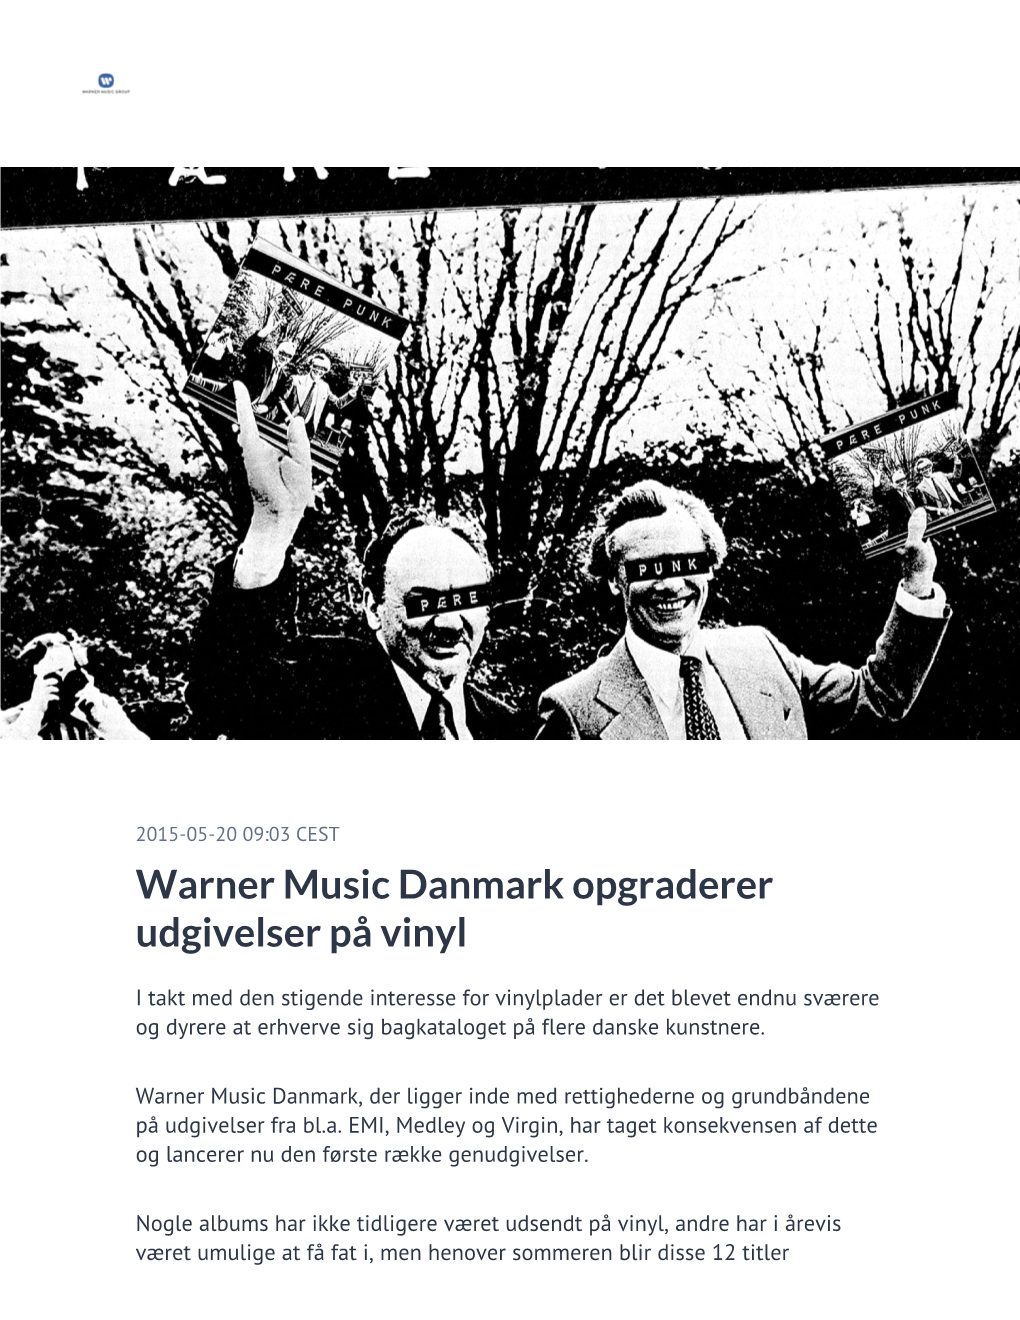 Warner Music Danmark Opgraderer Udgivelser På Vinyl